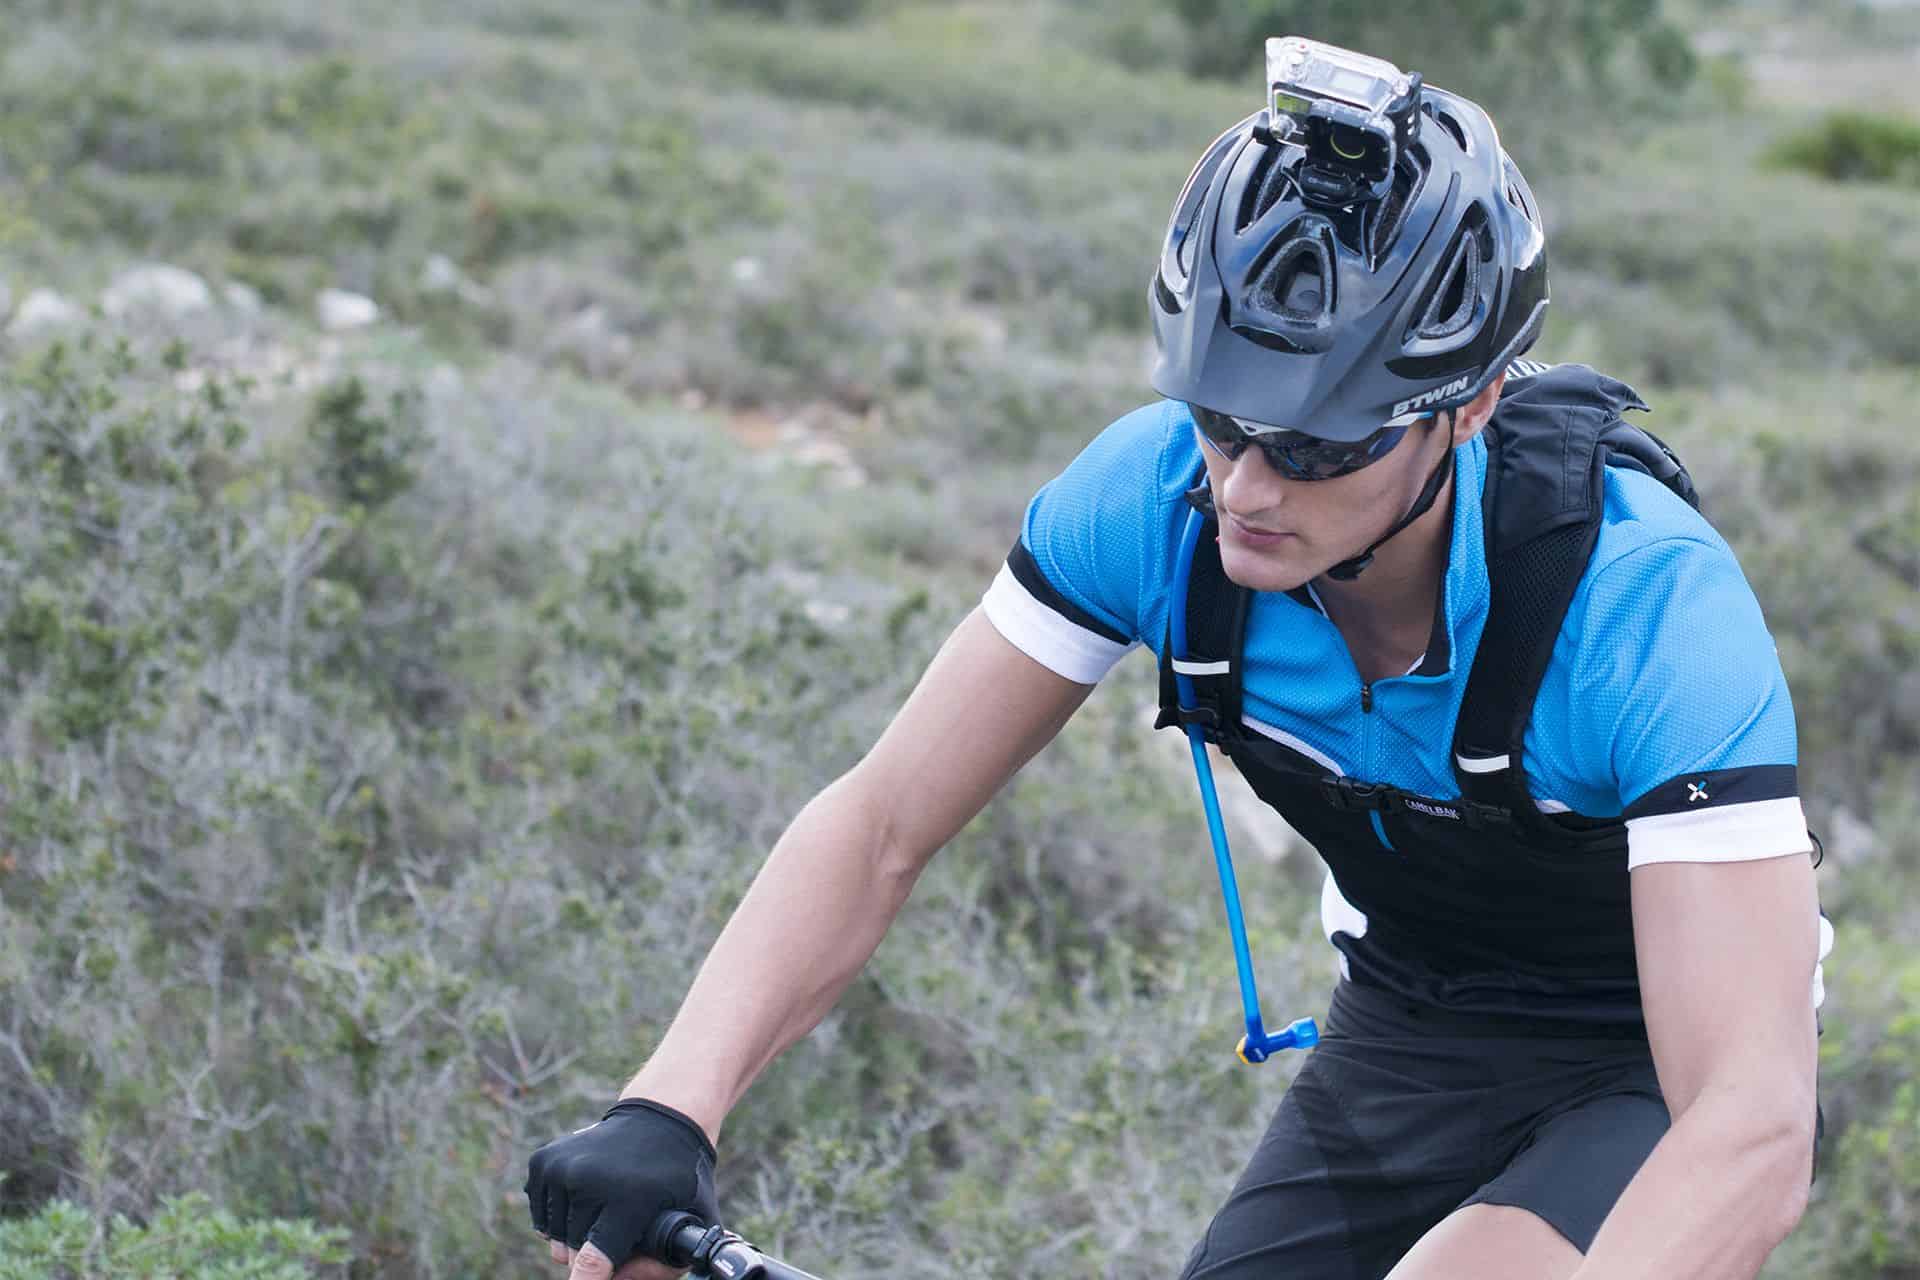 Kamera na rower - co powinna zawierać kamera sportowa na rower?